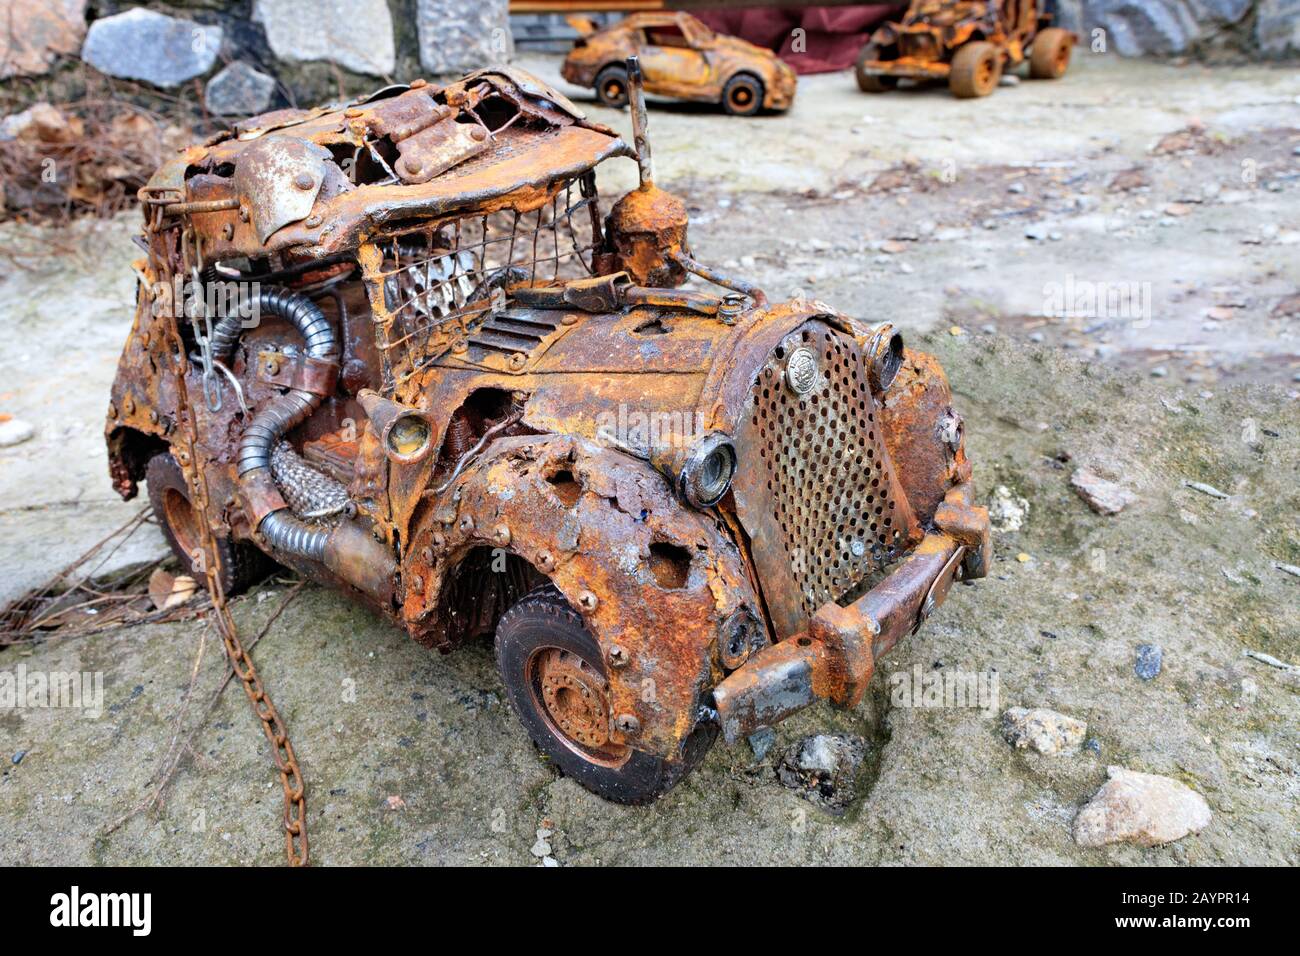 Une voiture jouet en métal de style rétro inventée avec une chaîne faite de déchets ménagers. Banque D'Images